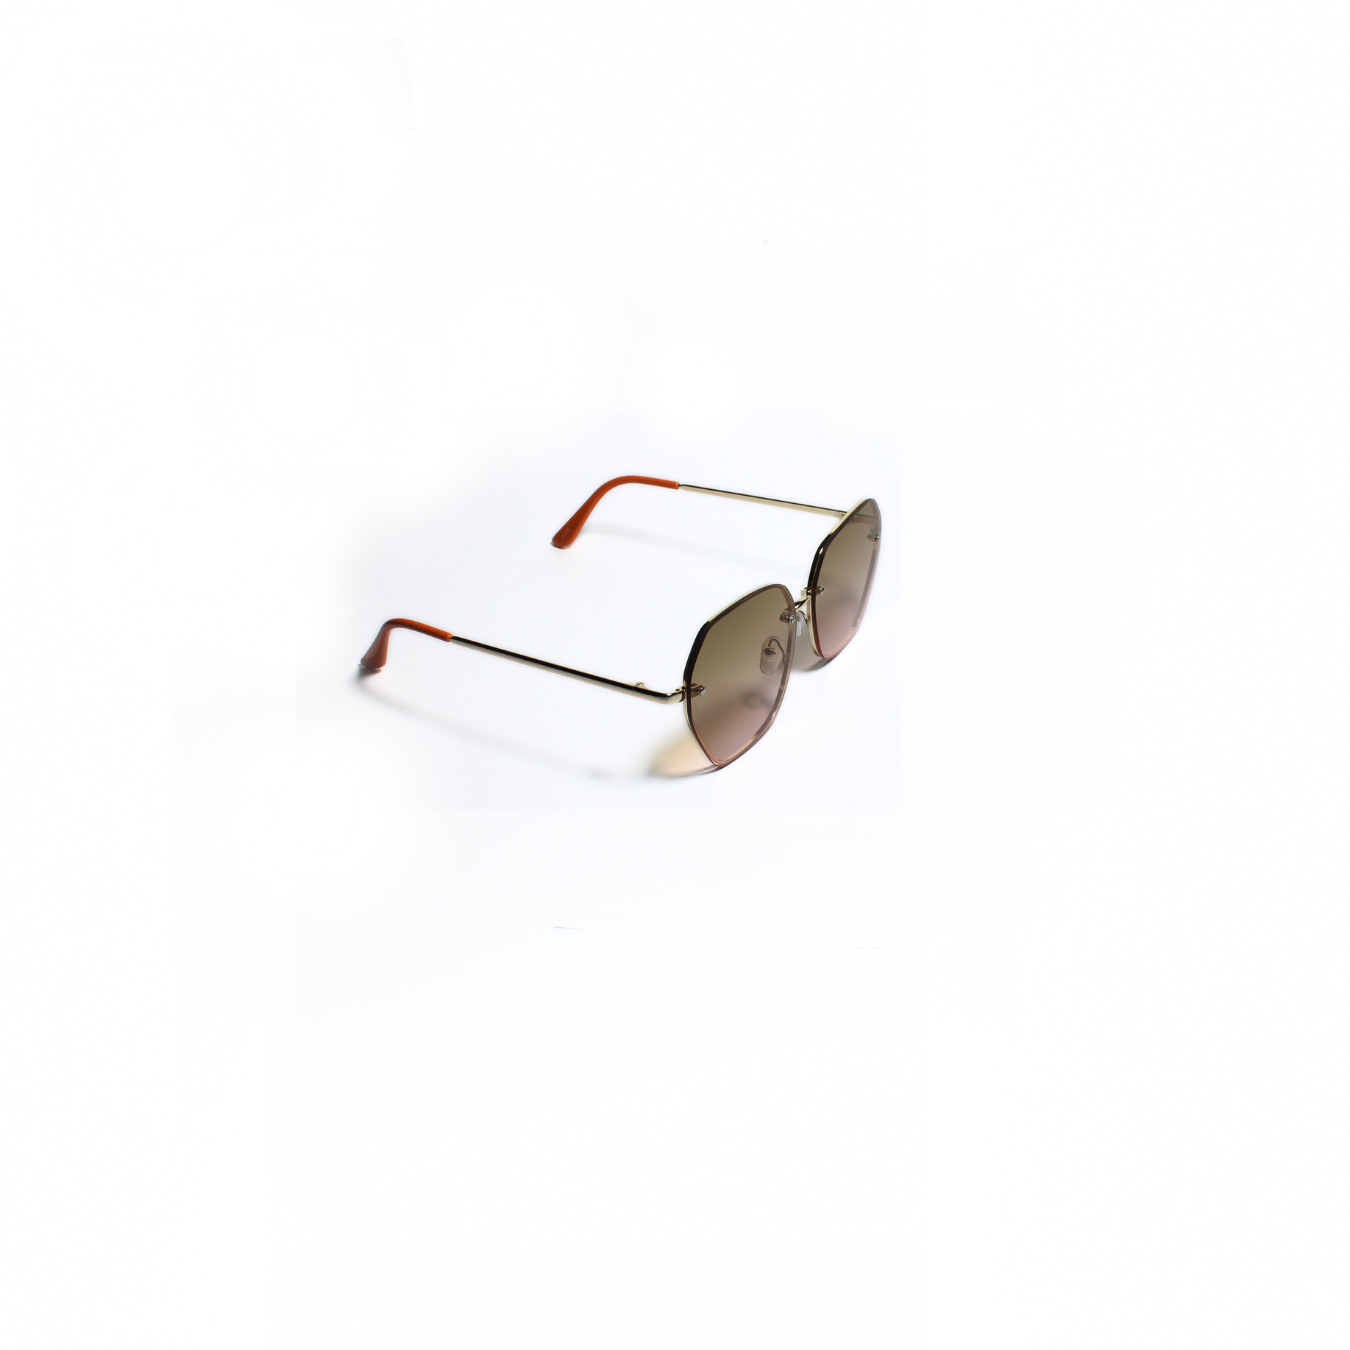 ADRIA 002 I Sunglasses for Women - Specsview